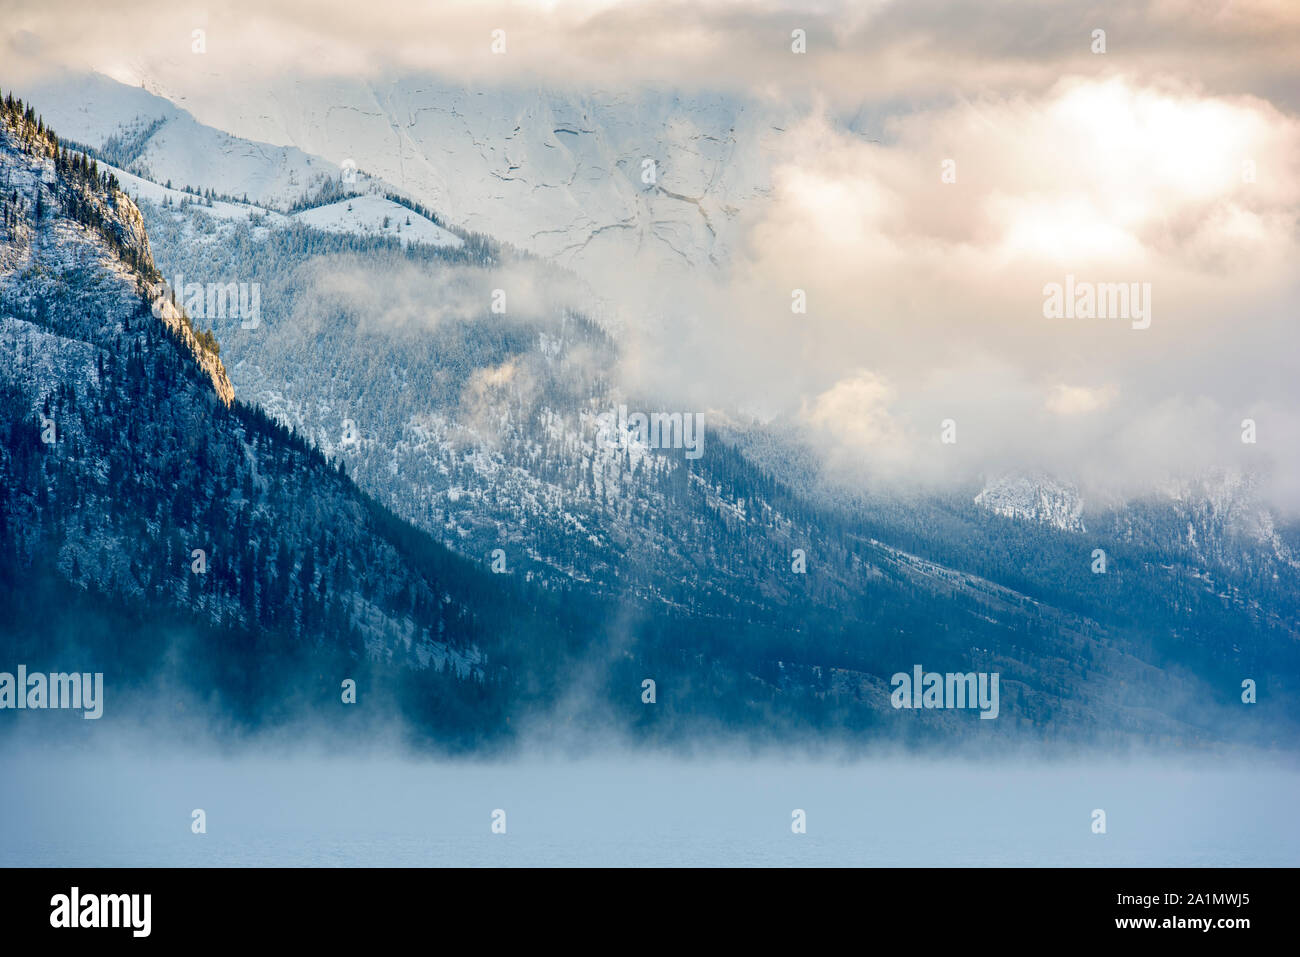 Prima neve sulle montagne intorno al lago Minnewonka, il Parco Nazionale di Banff, Alberta, Canada Foto Stock